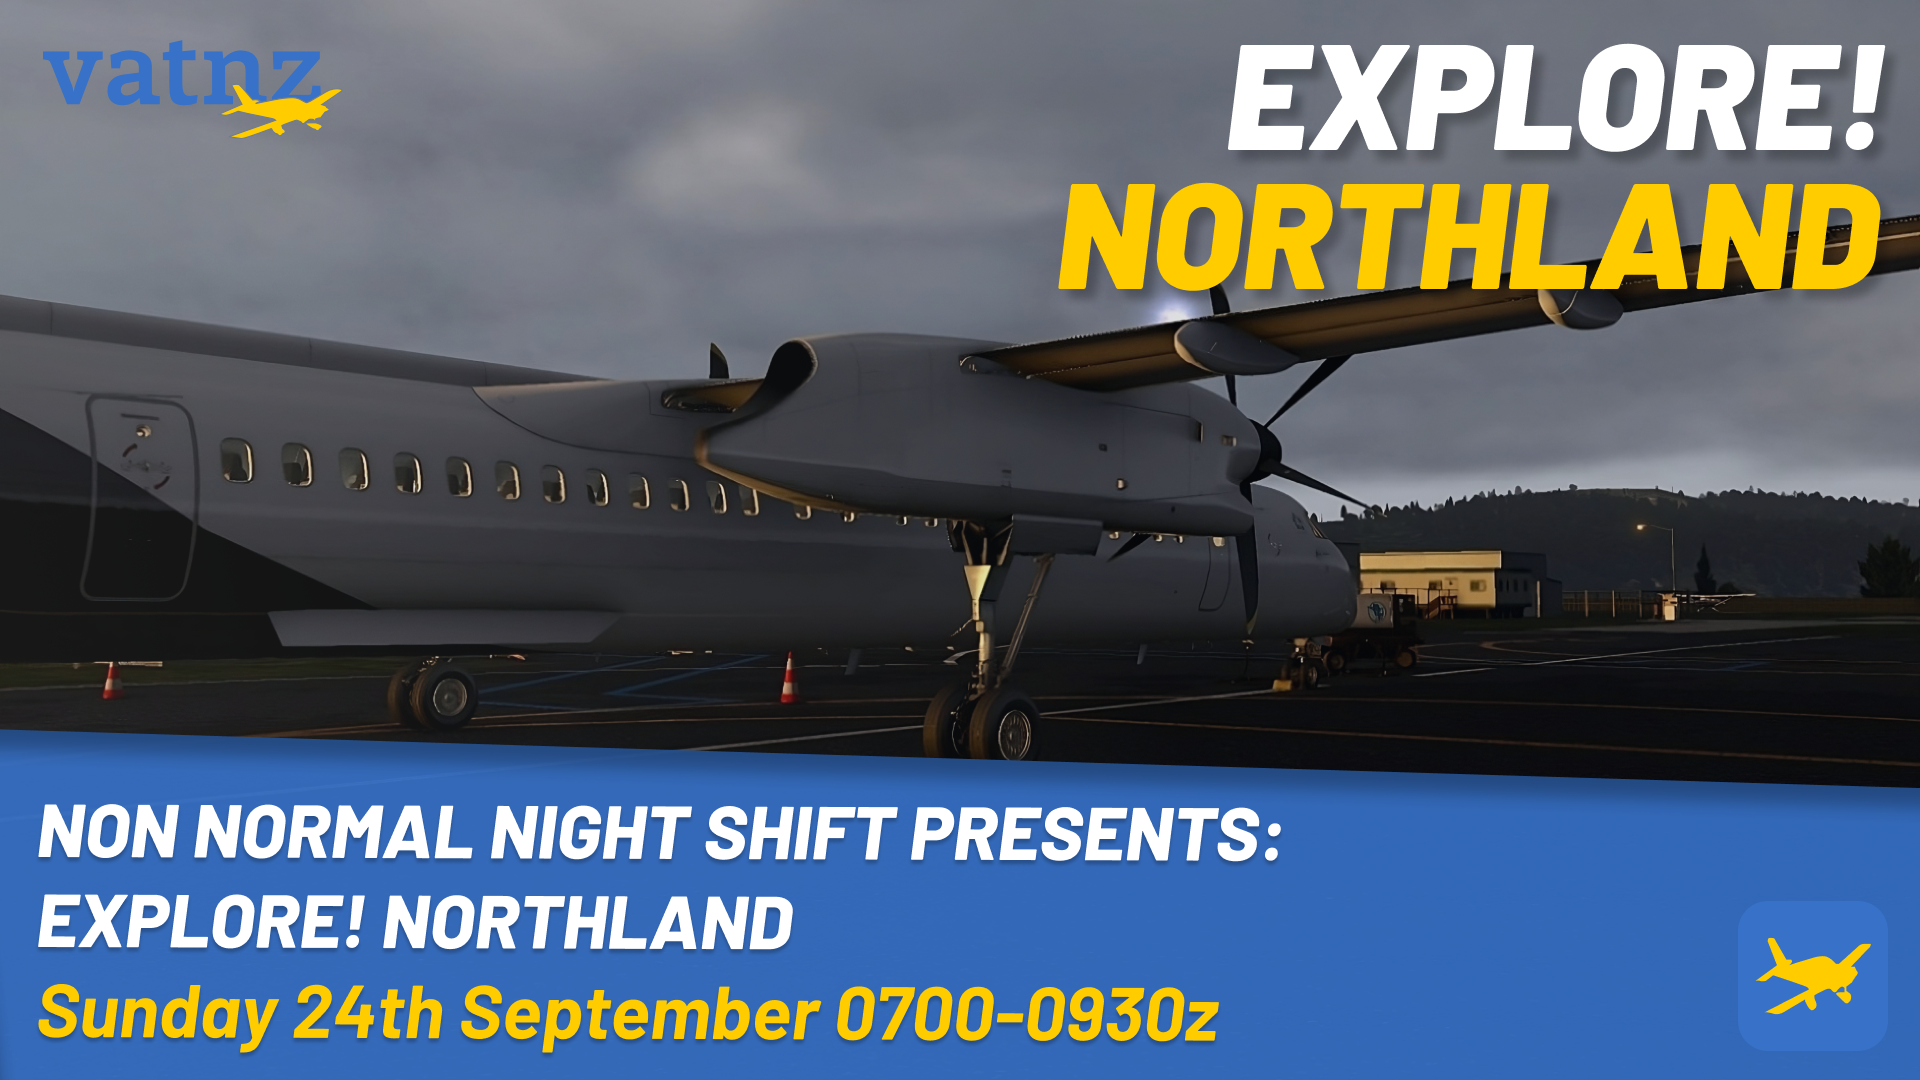 Non Normal Night Shift Presents: Explore Northland!